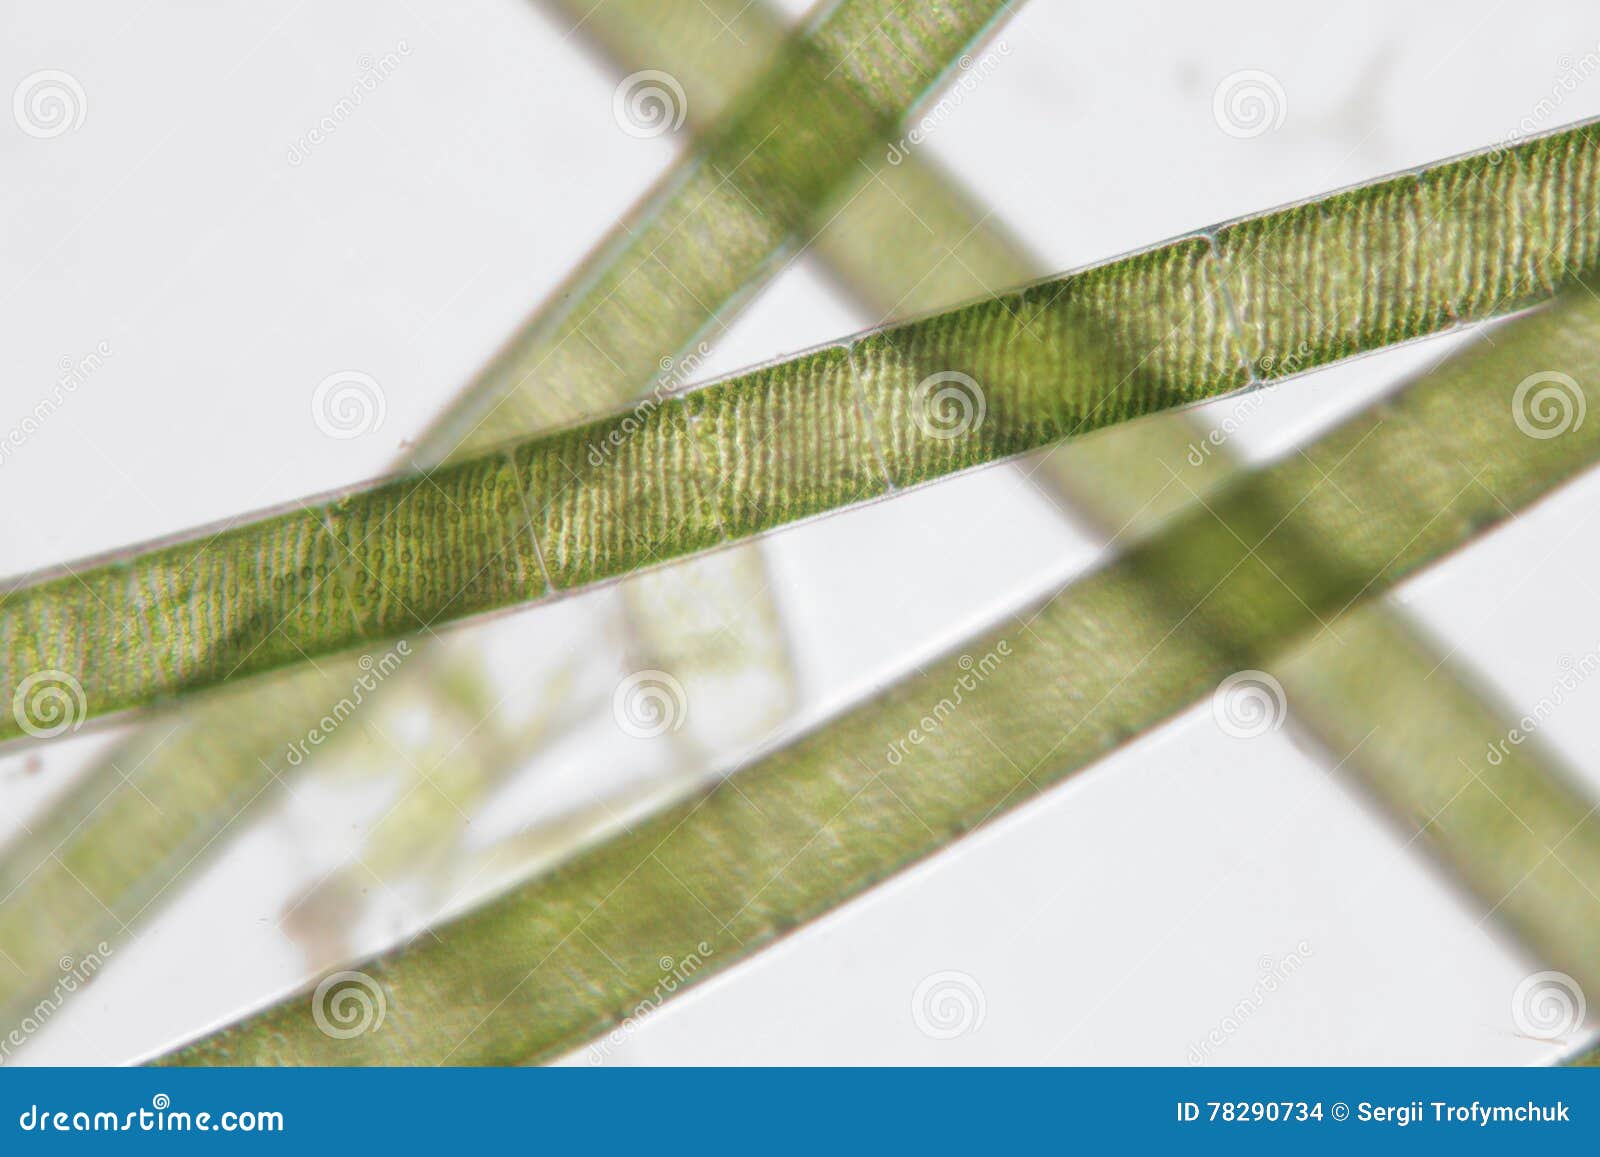 freshwater spirogyra. filamentous charophyte green algae order zygnematales. spiral chloroplasts